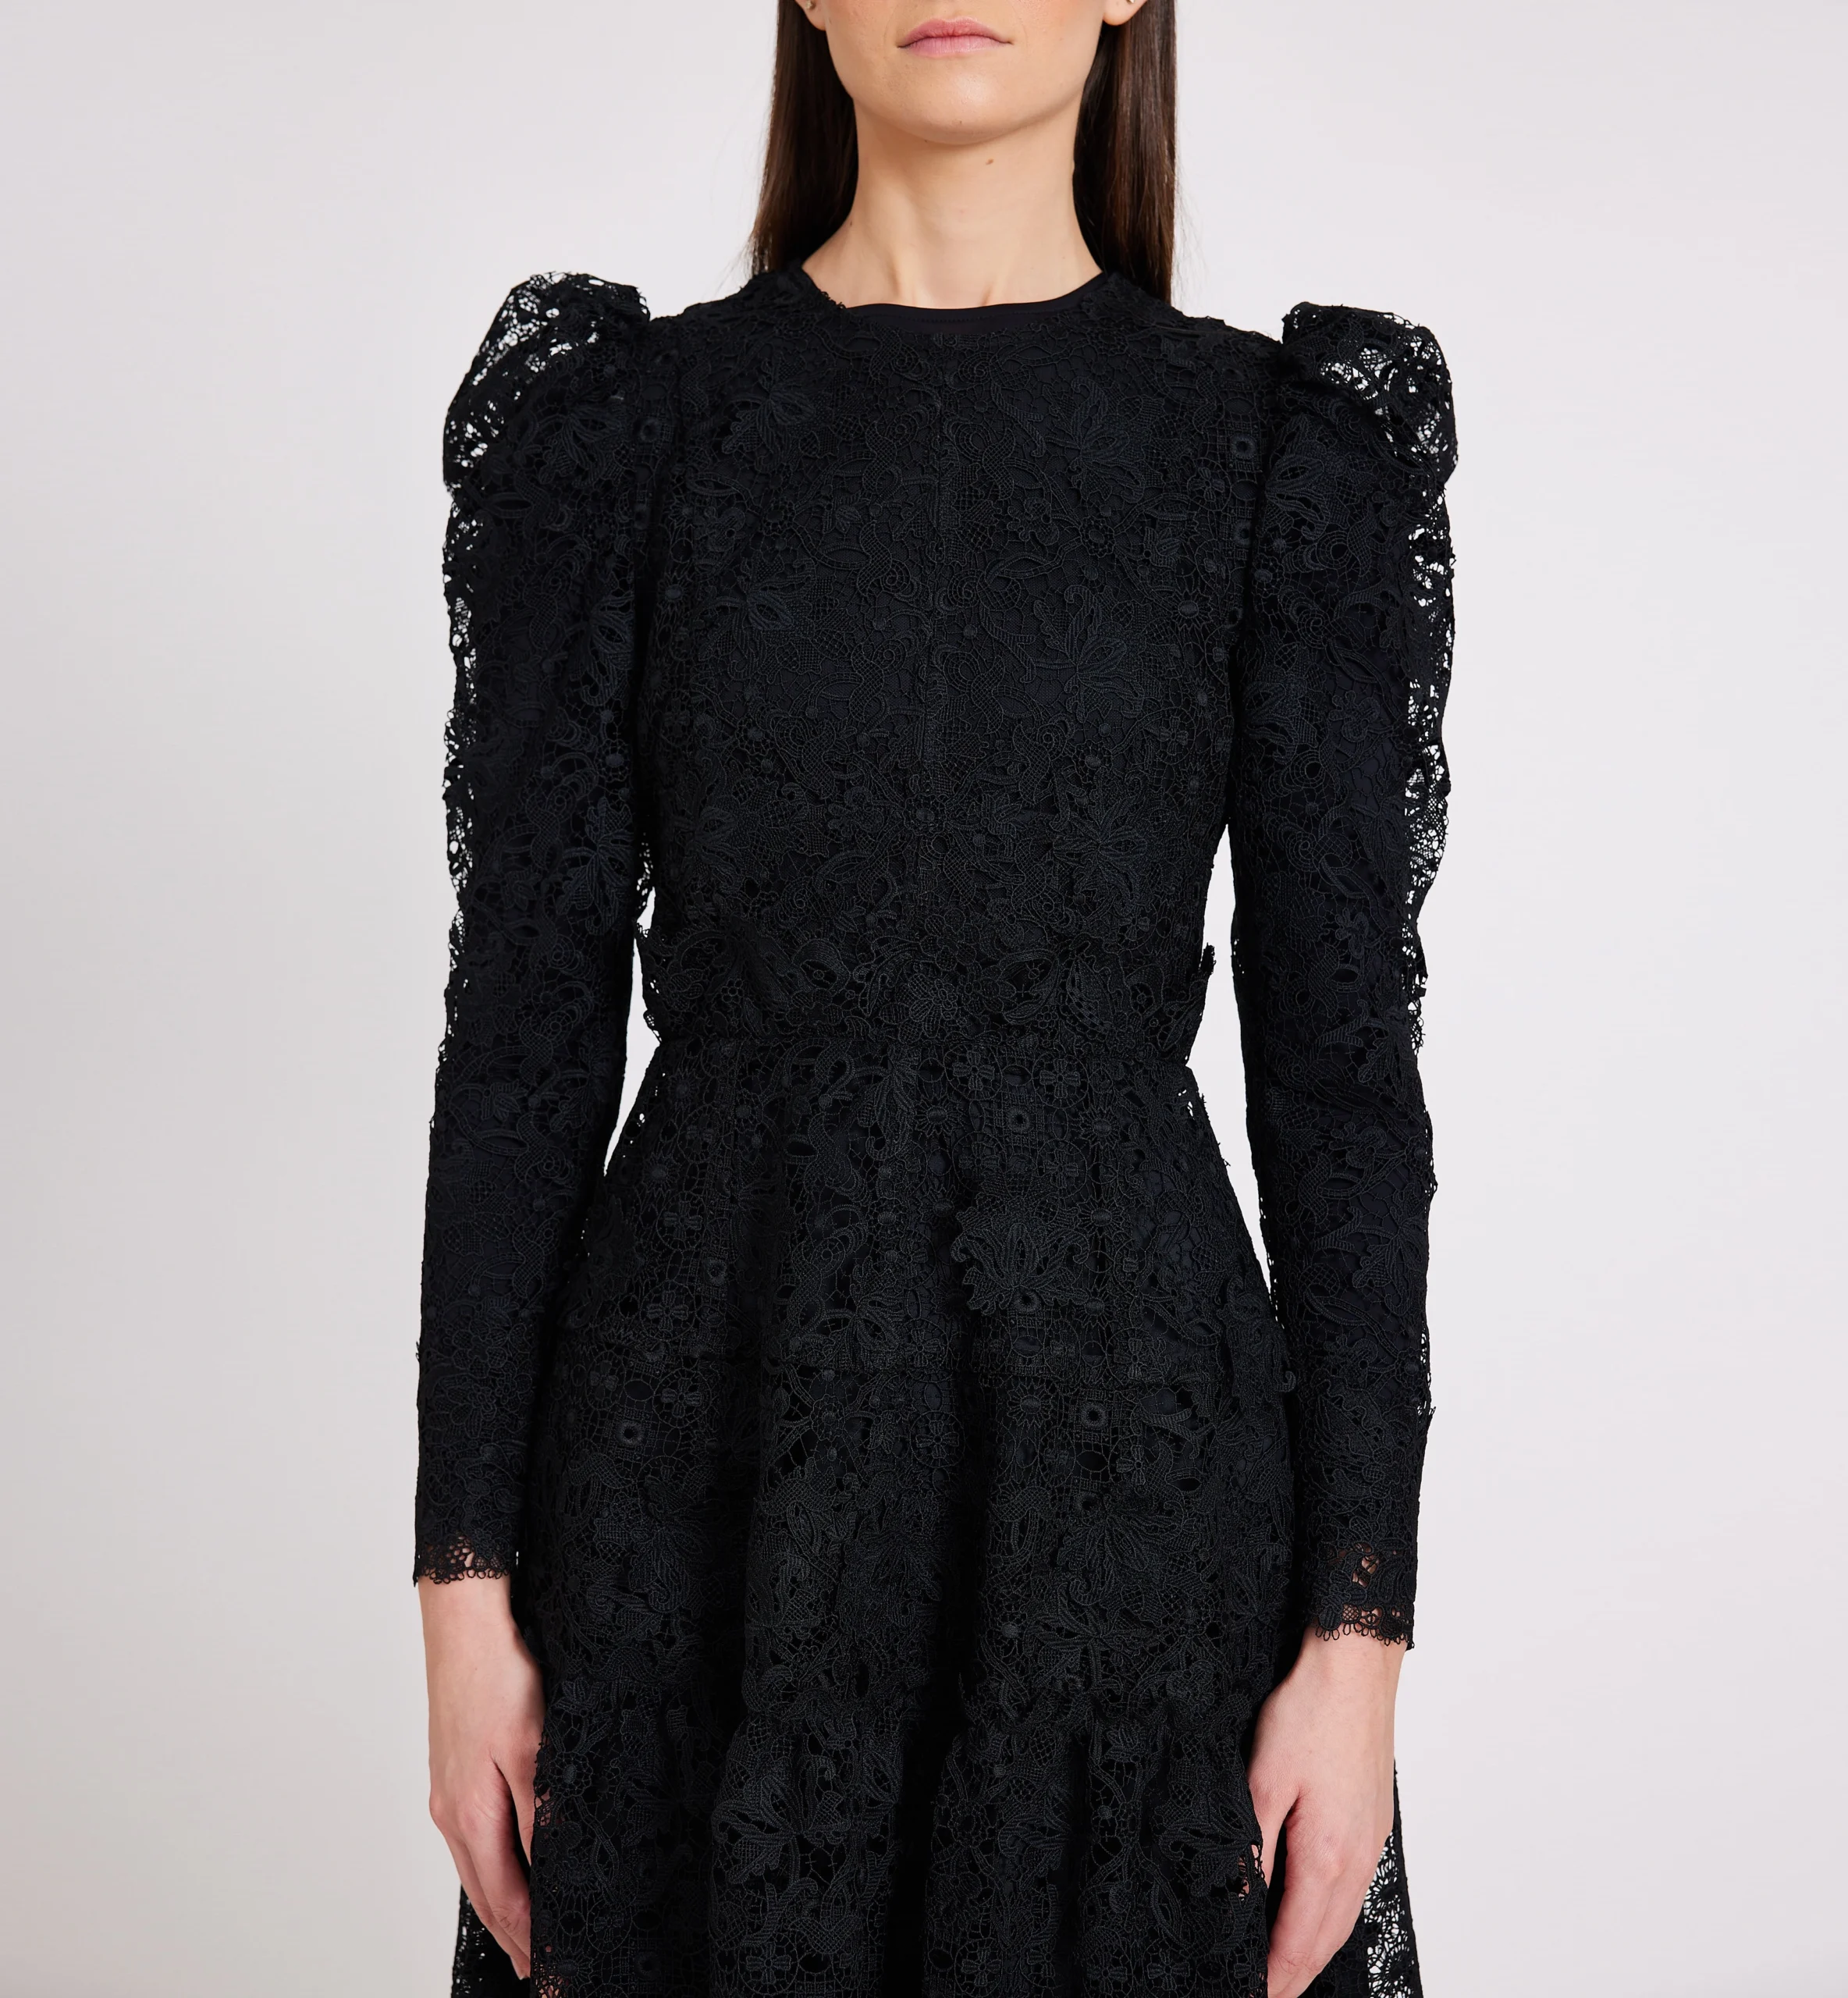 Lace combination dress, black